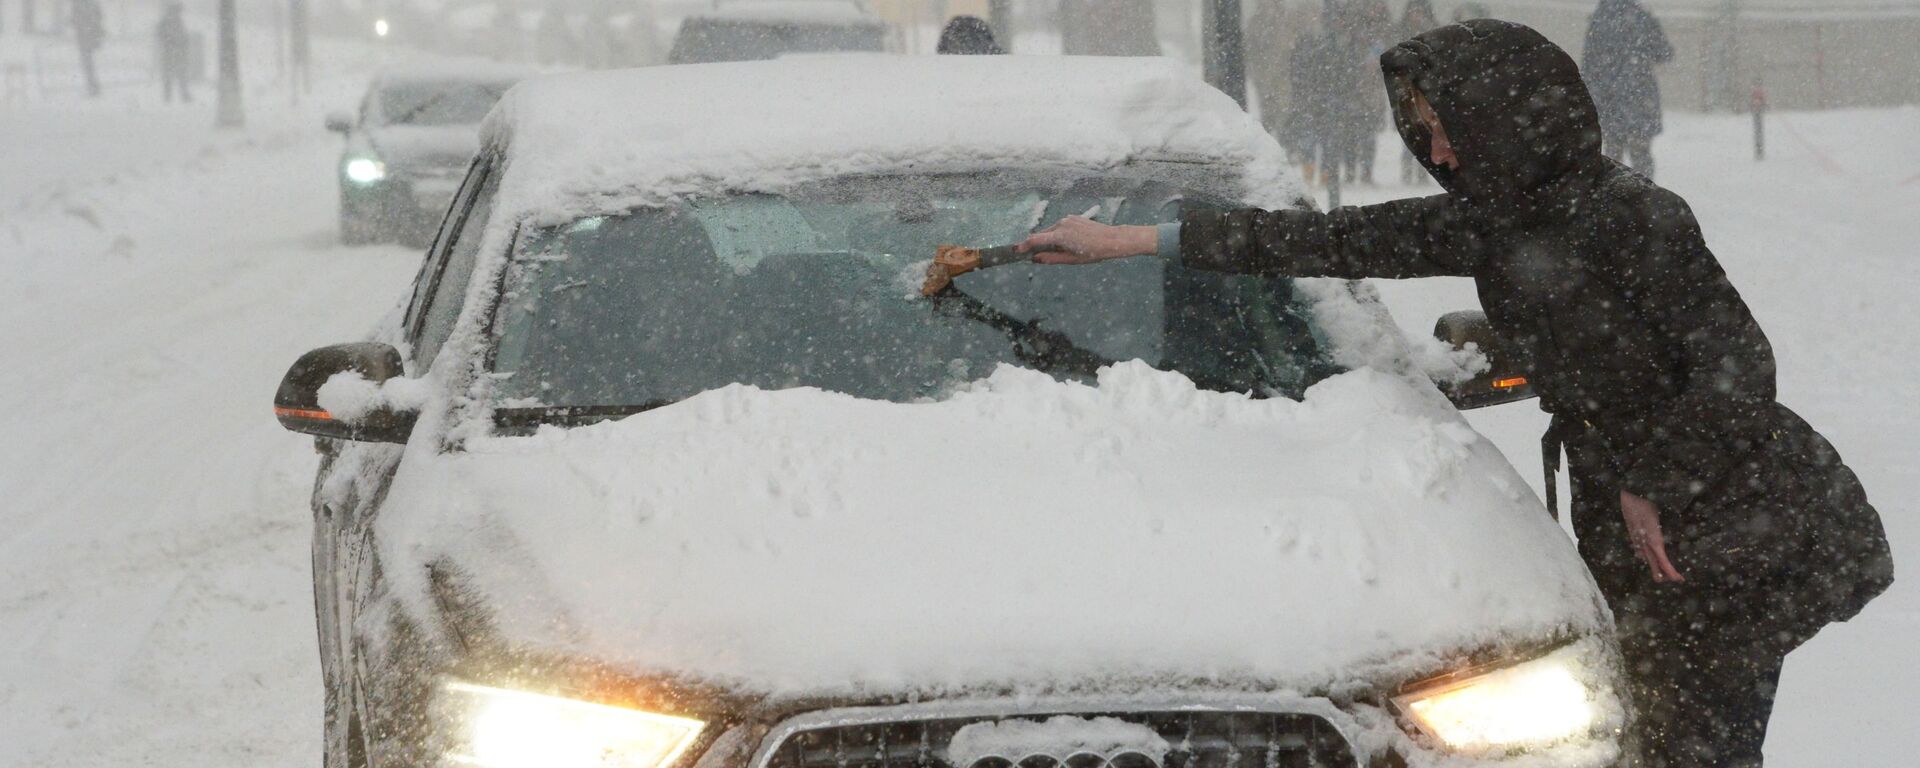 Владелица отчищает свою машину от налипшего снега во время снегопада в Москве - Sputnik Латвия, 1920, 09.12.2022